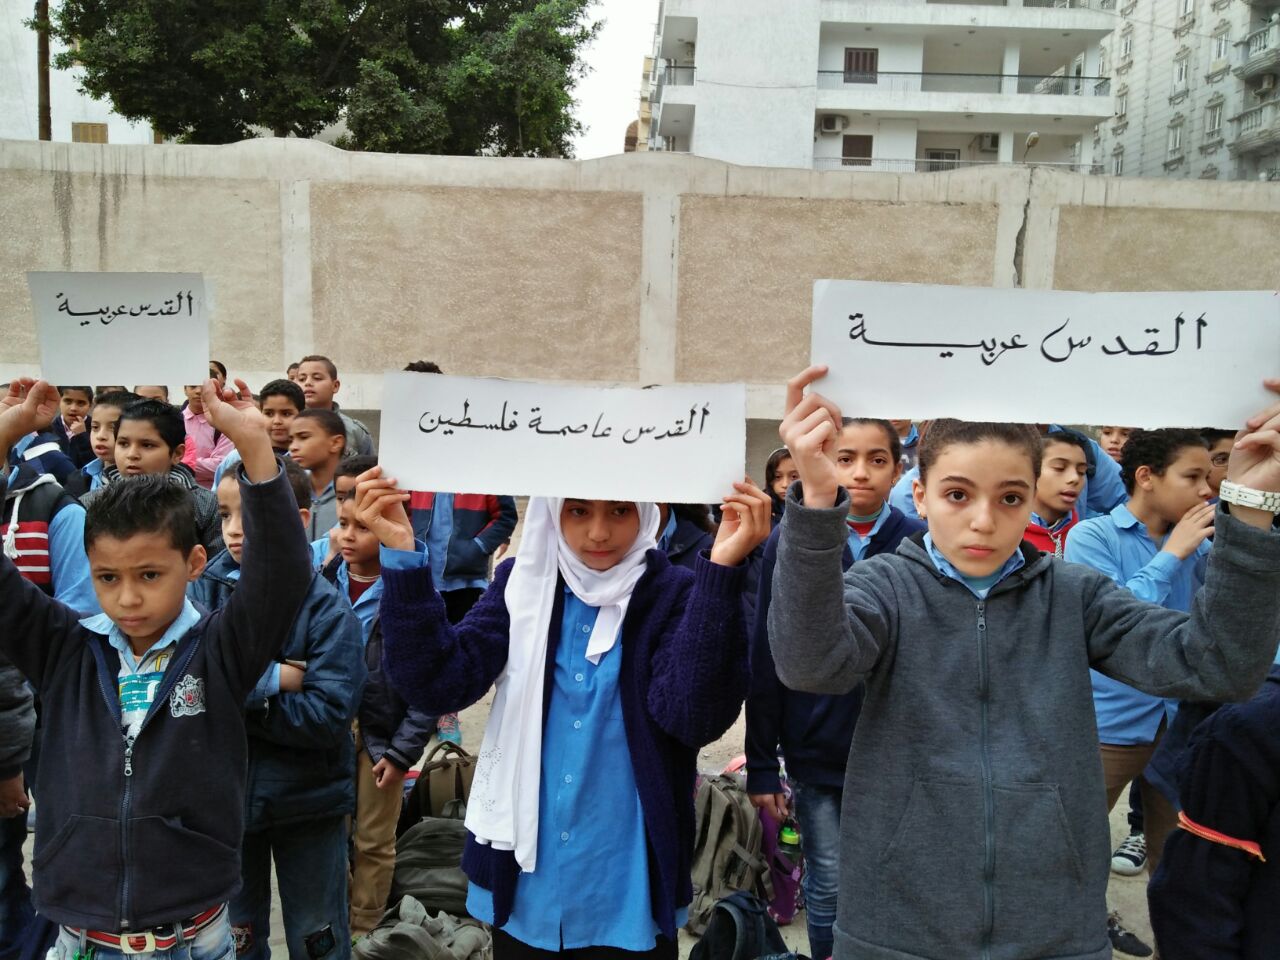 صور طالبات مدرسة العجمى الثانوية بنات يكتبن كلمة القدس بأجسادهن (3)